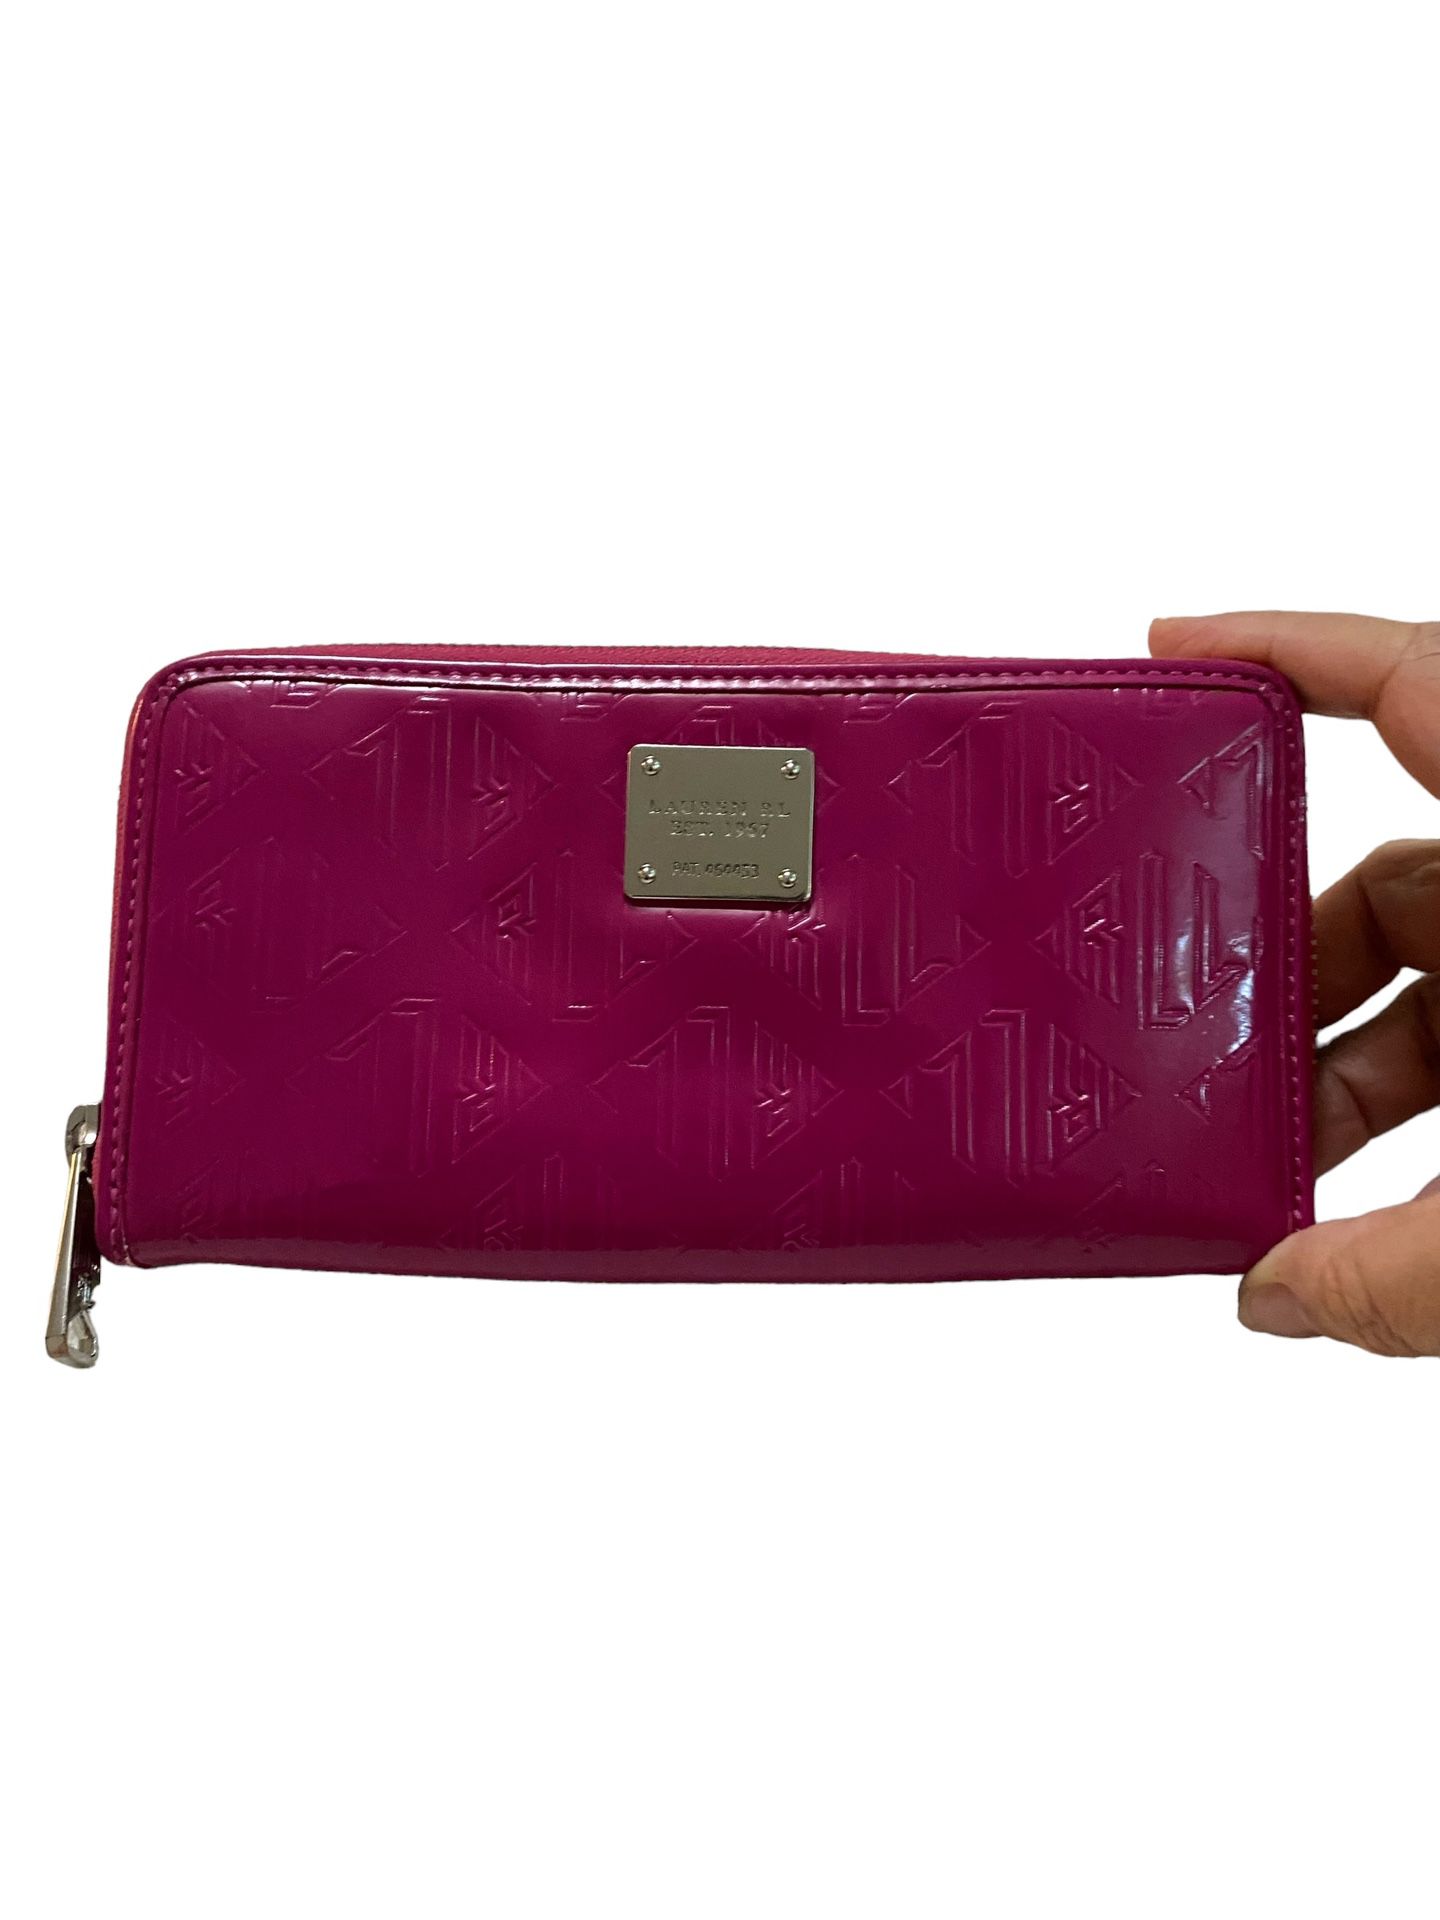 Lauren Ralph Lauren Wallet Hot Pink 